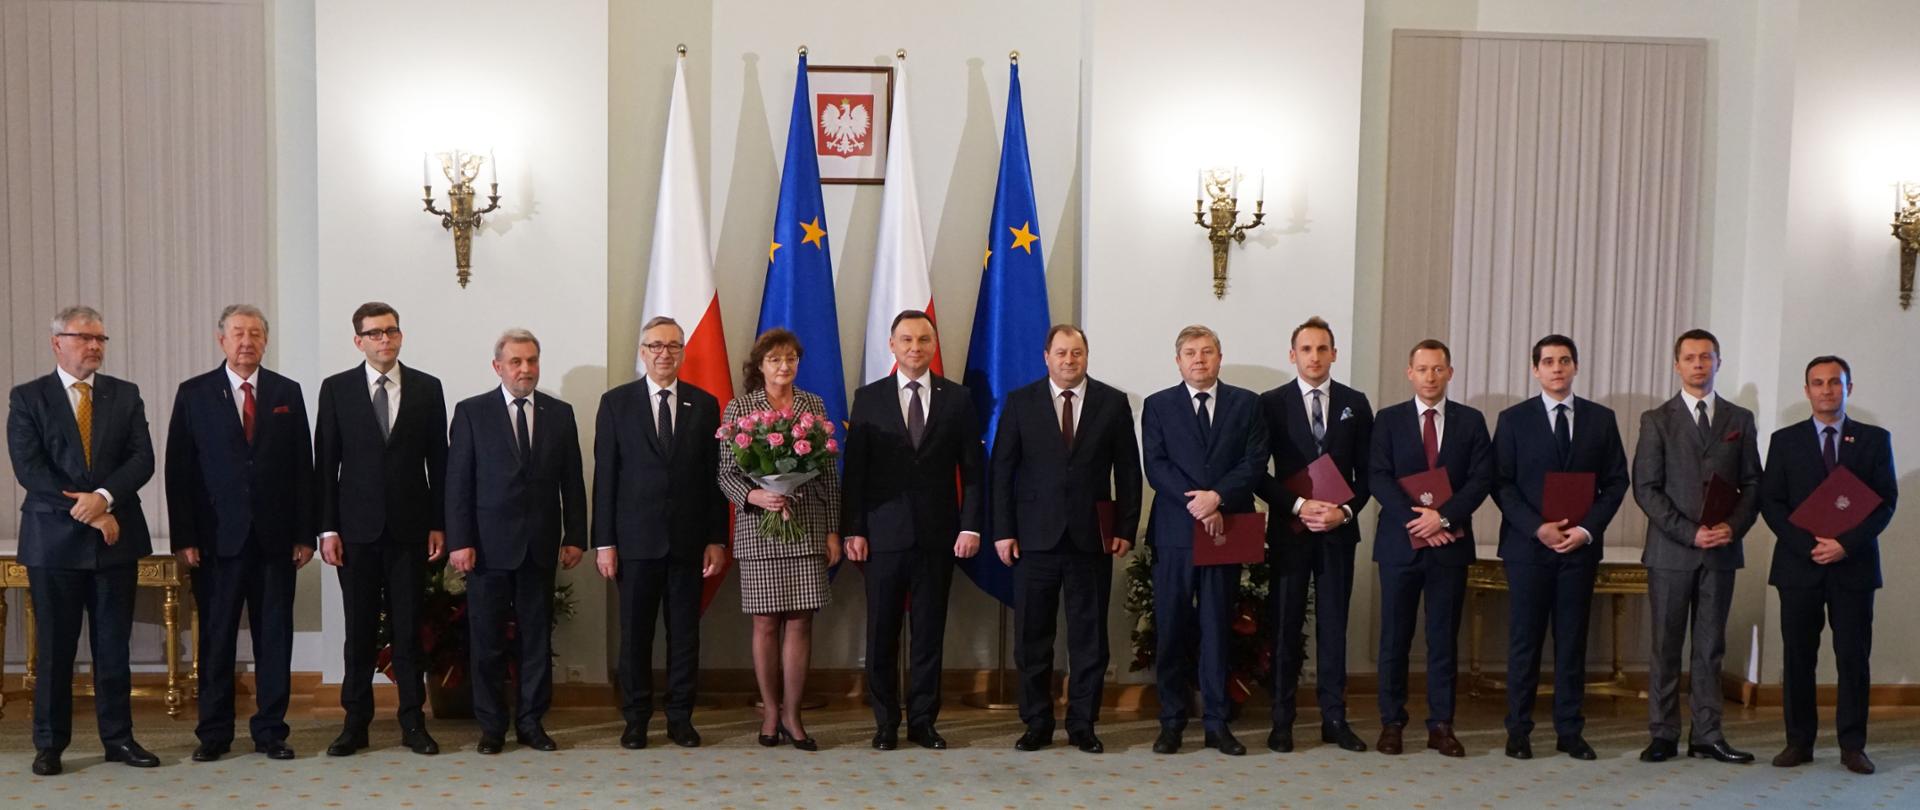 Prezydent Andrzej Duda powołał nowych członków Rady Dialogu Społecznego